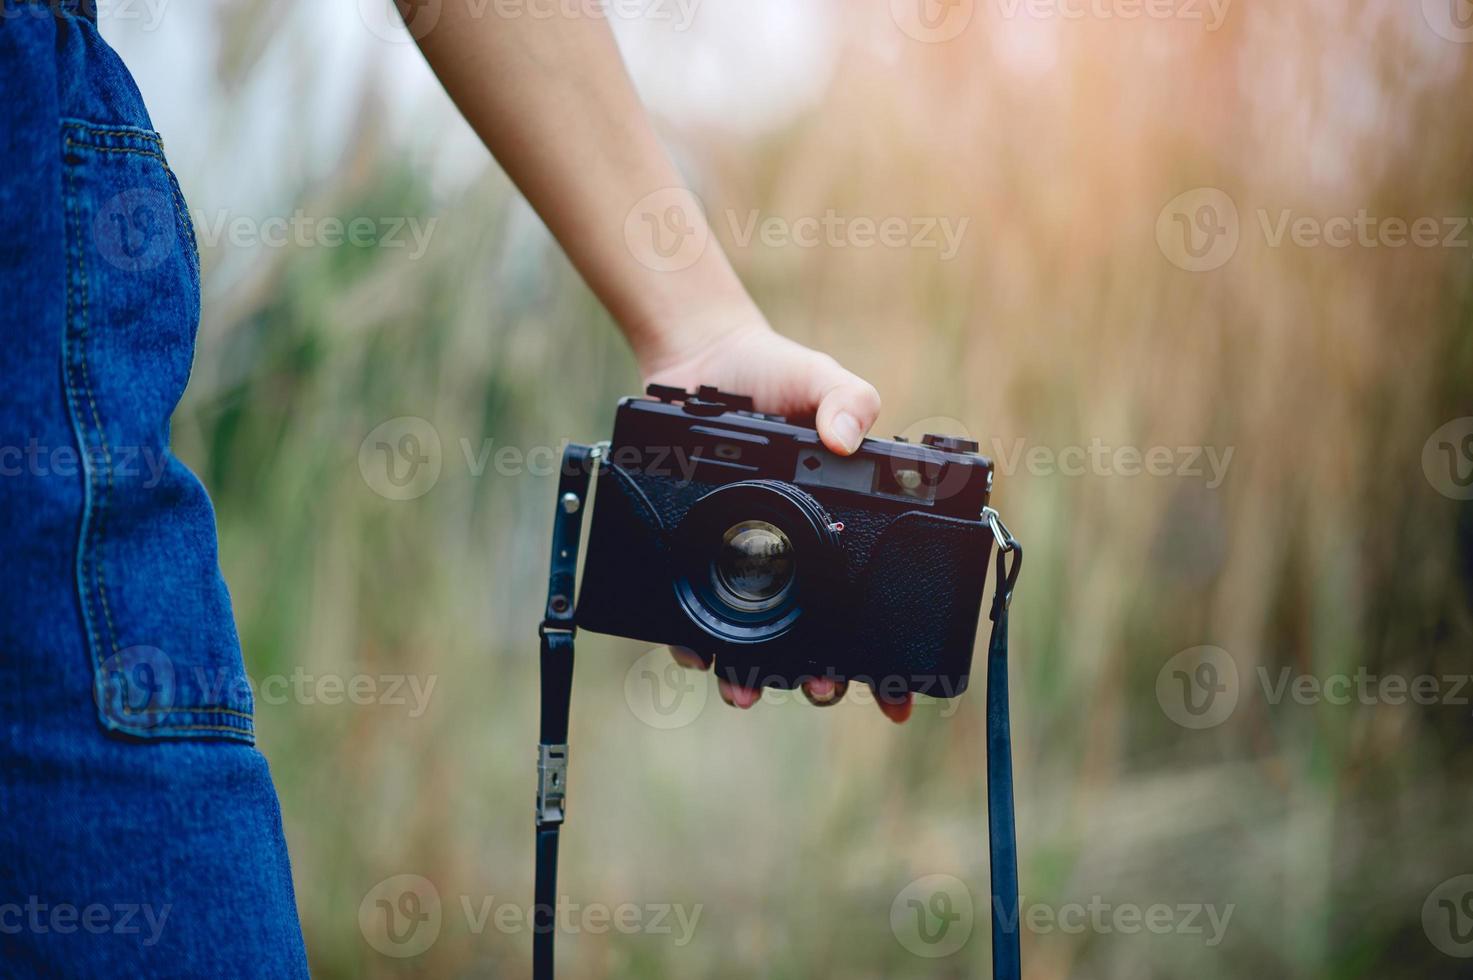 mão e câmera do fotógrafo segurando e carregando a câmera para tirar fotos